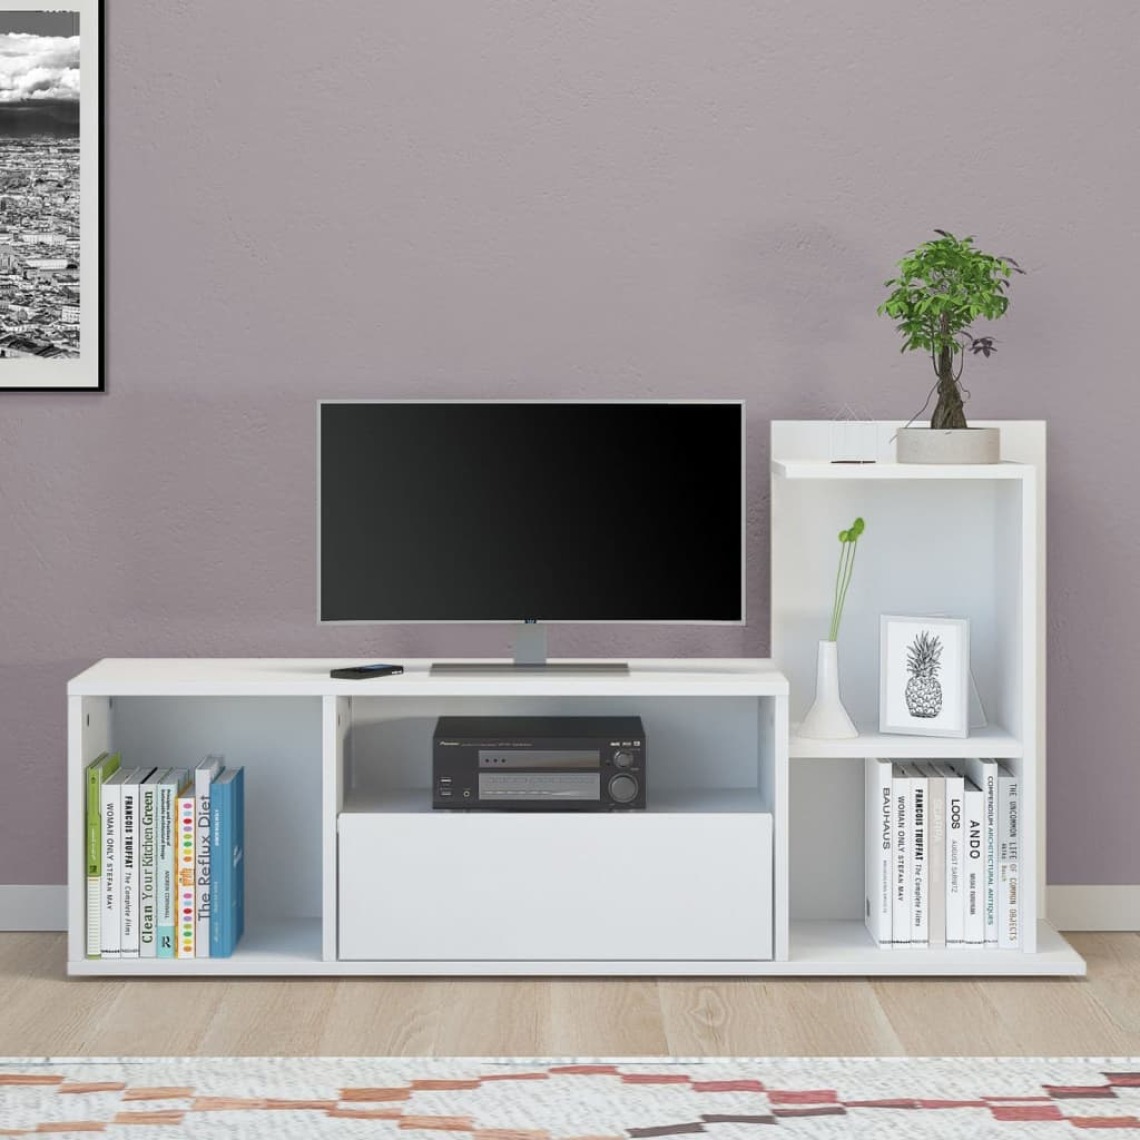 Homemania - HOMEMANIA Meuble TV Sumatra - avec des étagères - de Salon - Blanc en Bois, 120 x 30 x 65 cm - Meubles TV, Hi-Fi